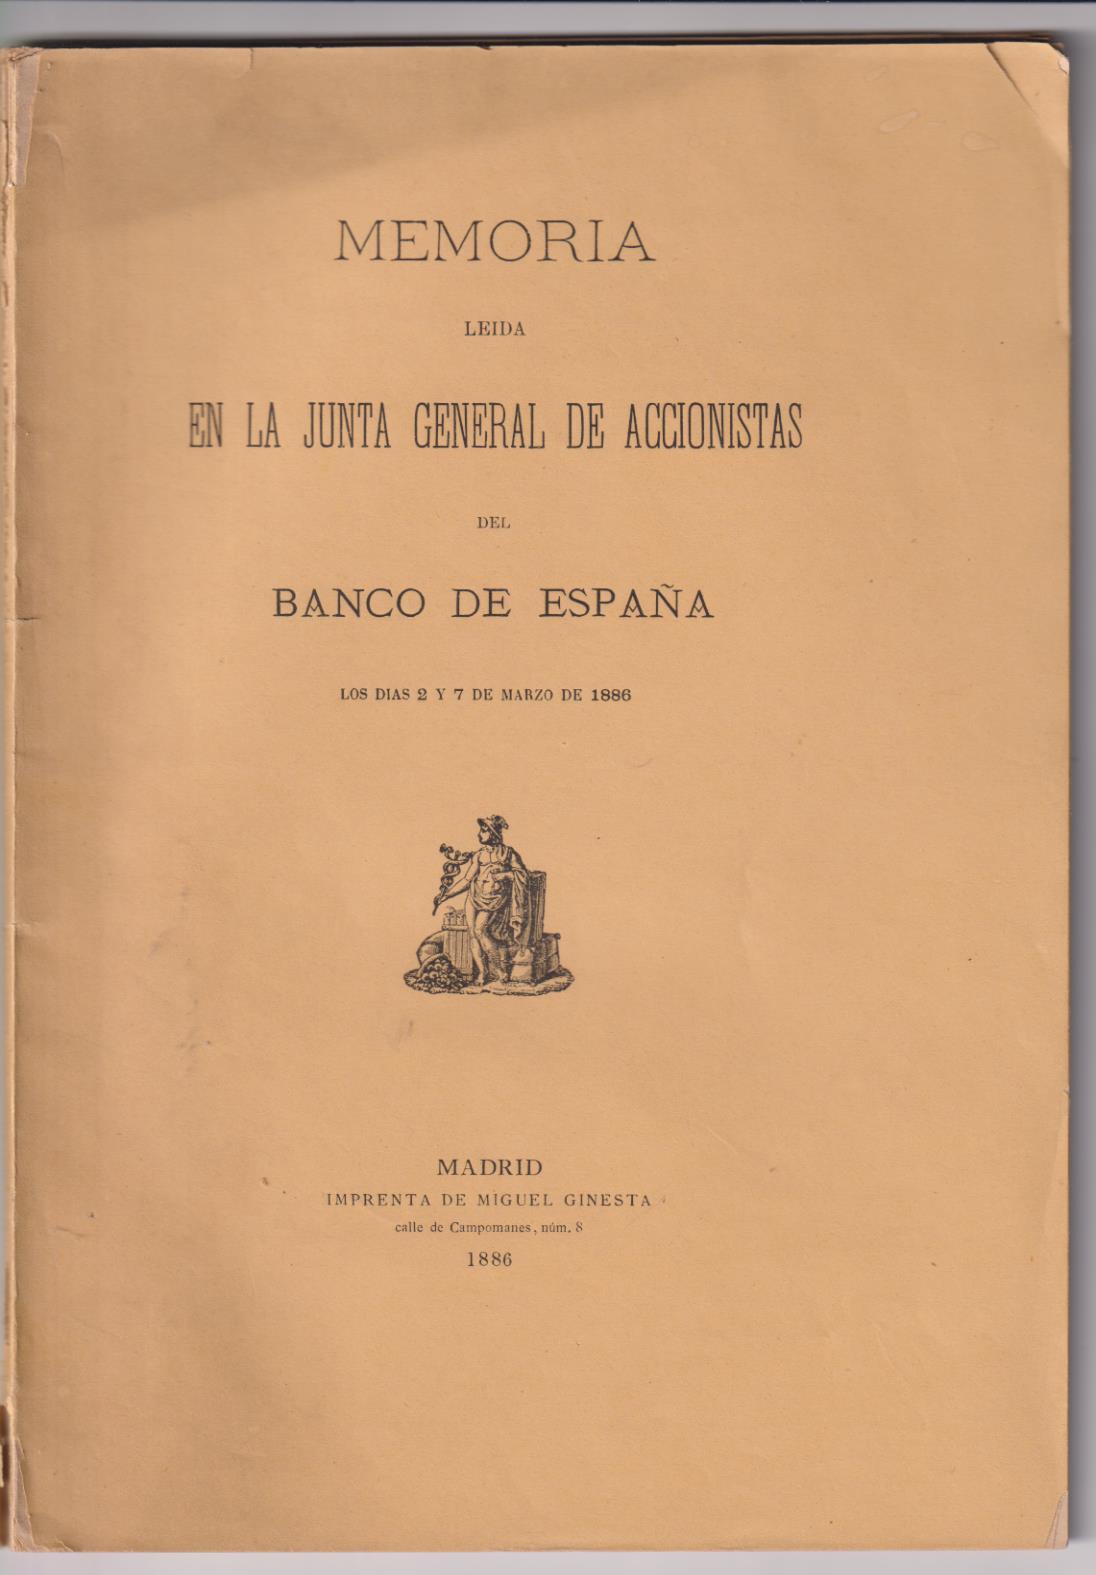 Memoria leída en la Junta General de Accionistas del Banco de España, los días 2 y 7 de marzo de 1886. Madrid 1886